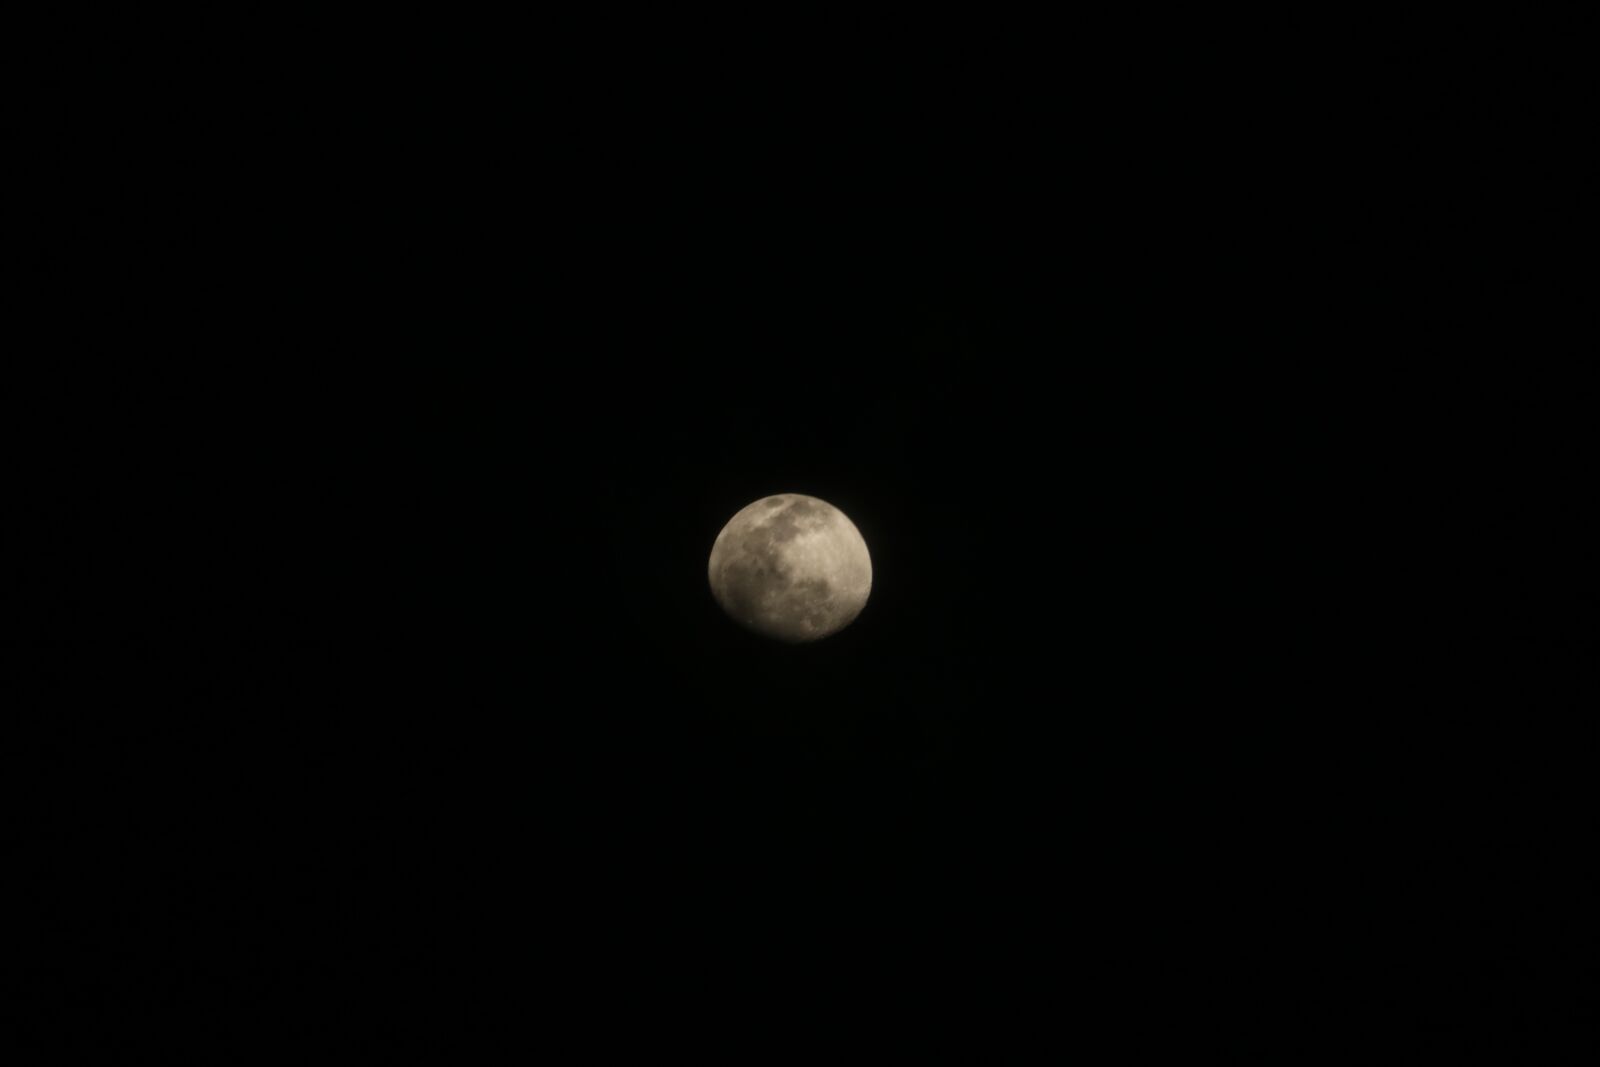 Canon EOS 750D (EOS Rebel T6i / EOS Kiss X8i) sample photo. Moon, night moon, night photography